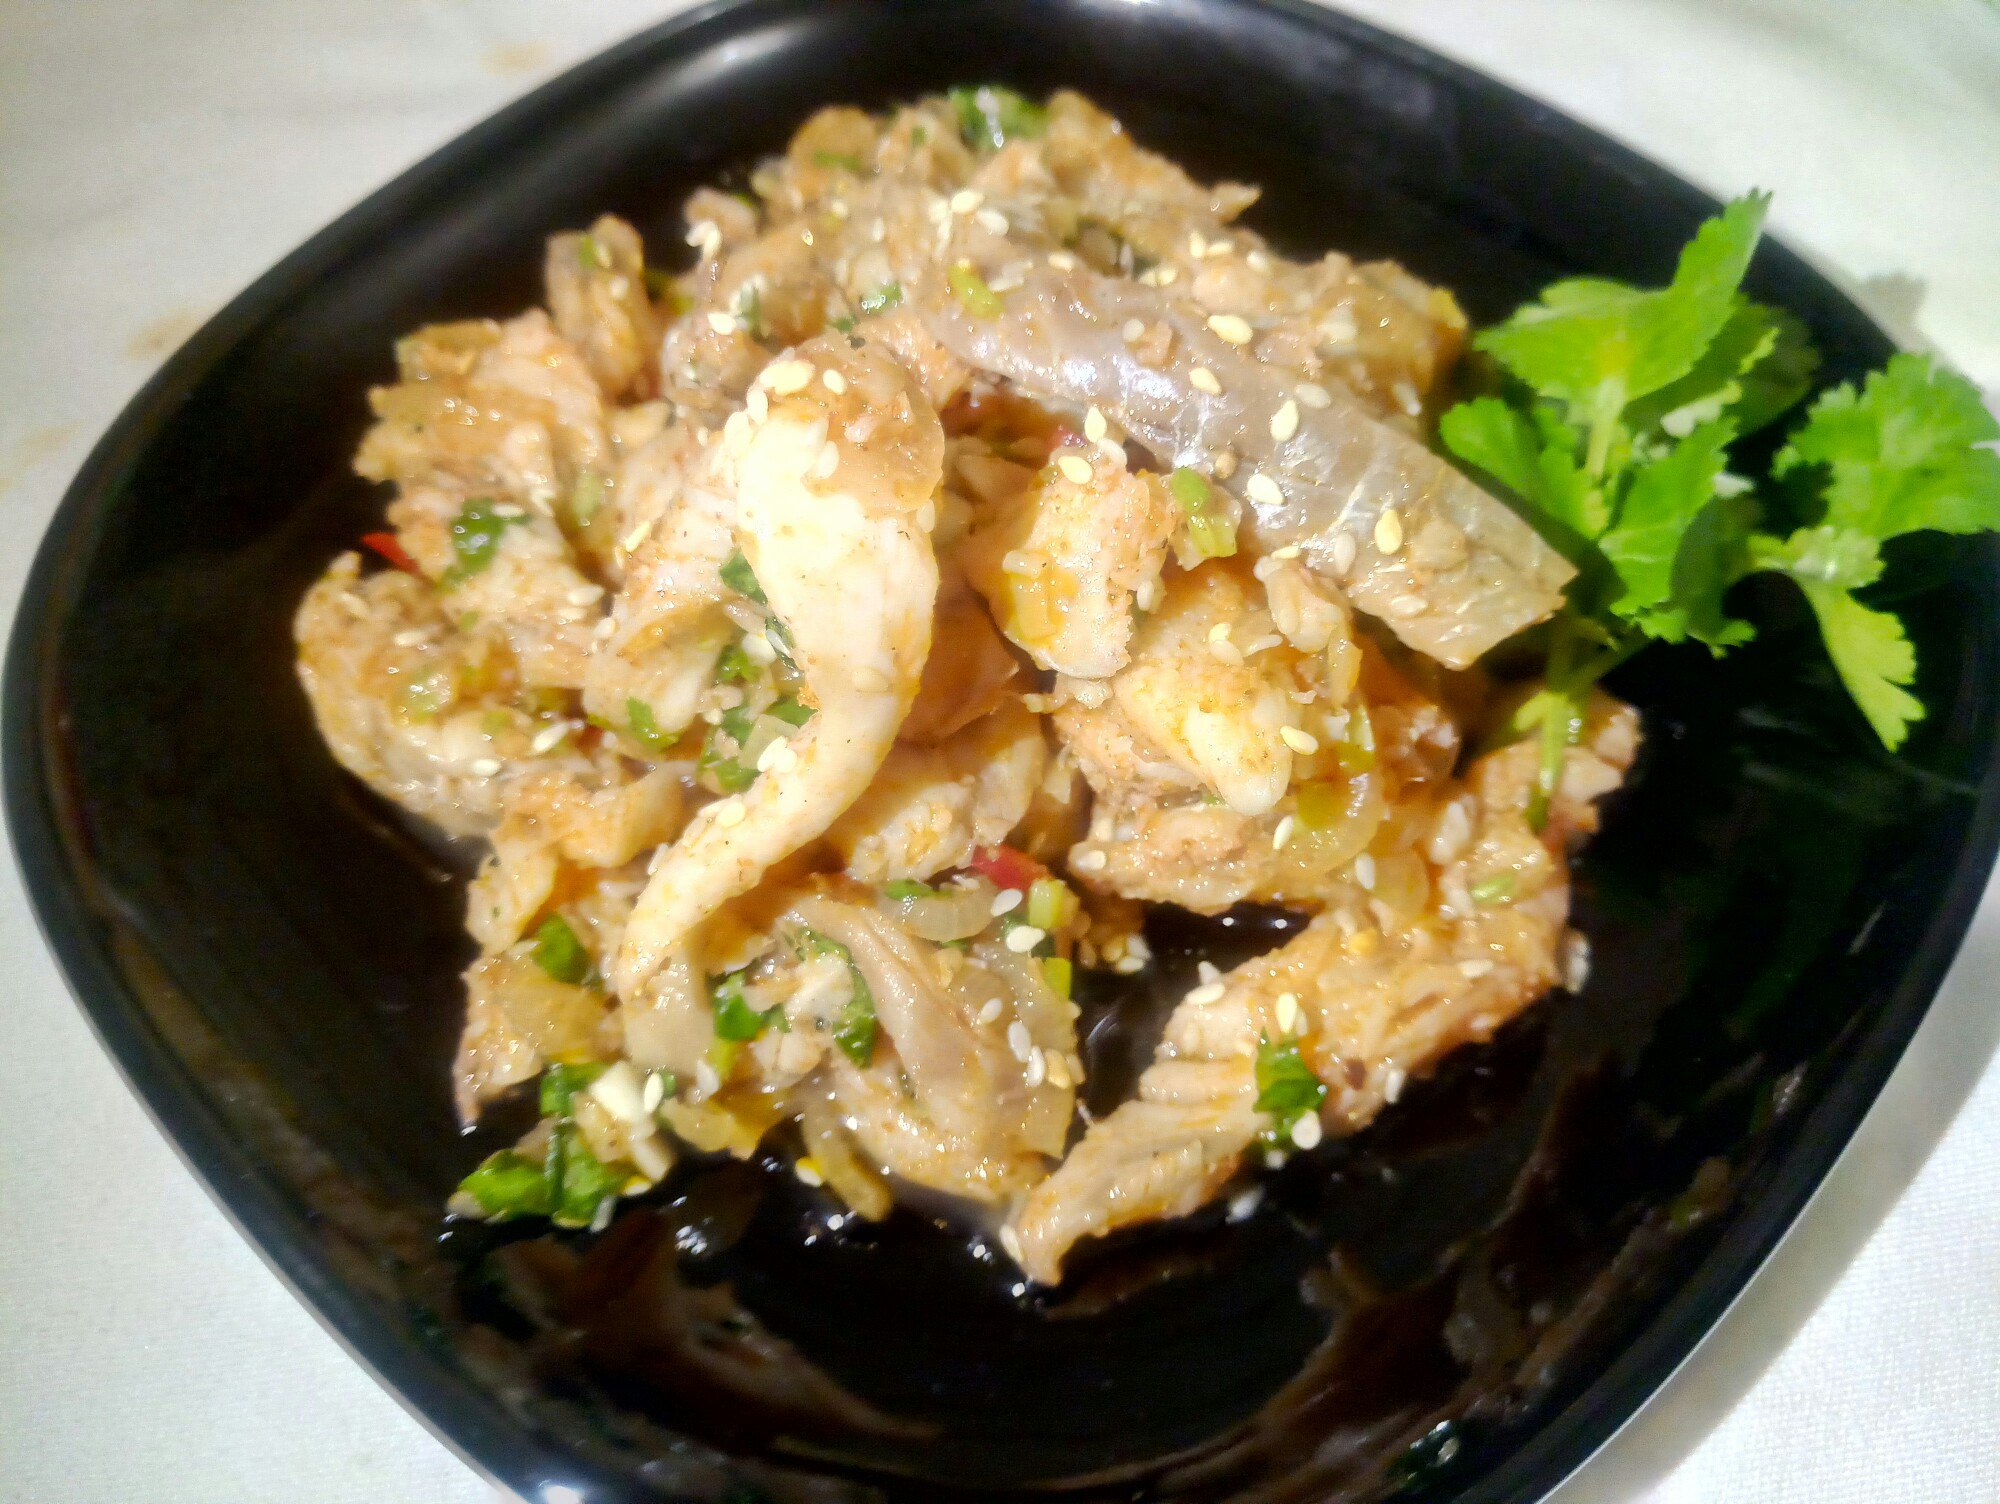 Закуска Хе из чира по-корейски: азиатский деликатес на вашем столе - пошаговый рецепт с фото